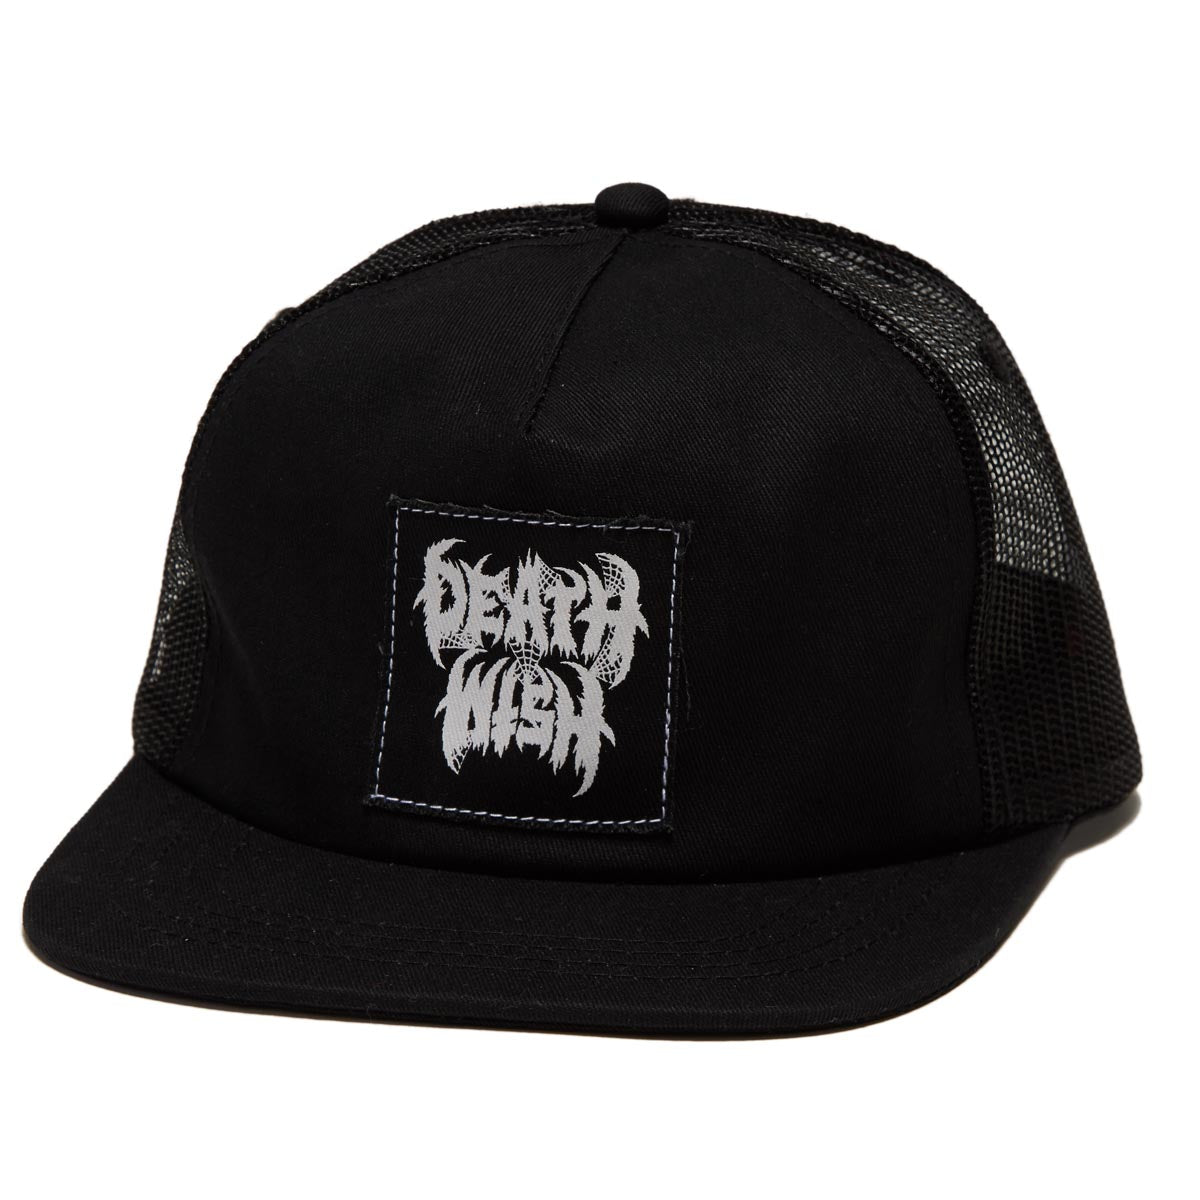 Deathwish Nightrider Trucker Hat - Black image 1